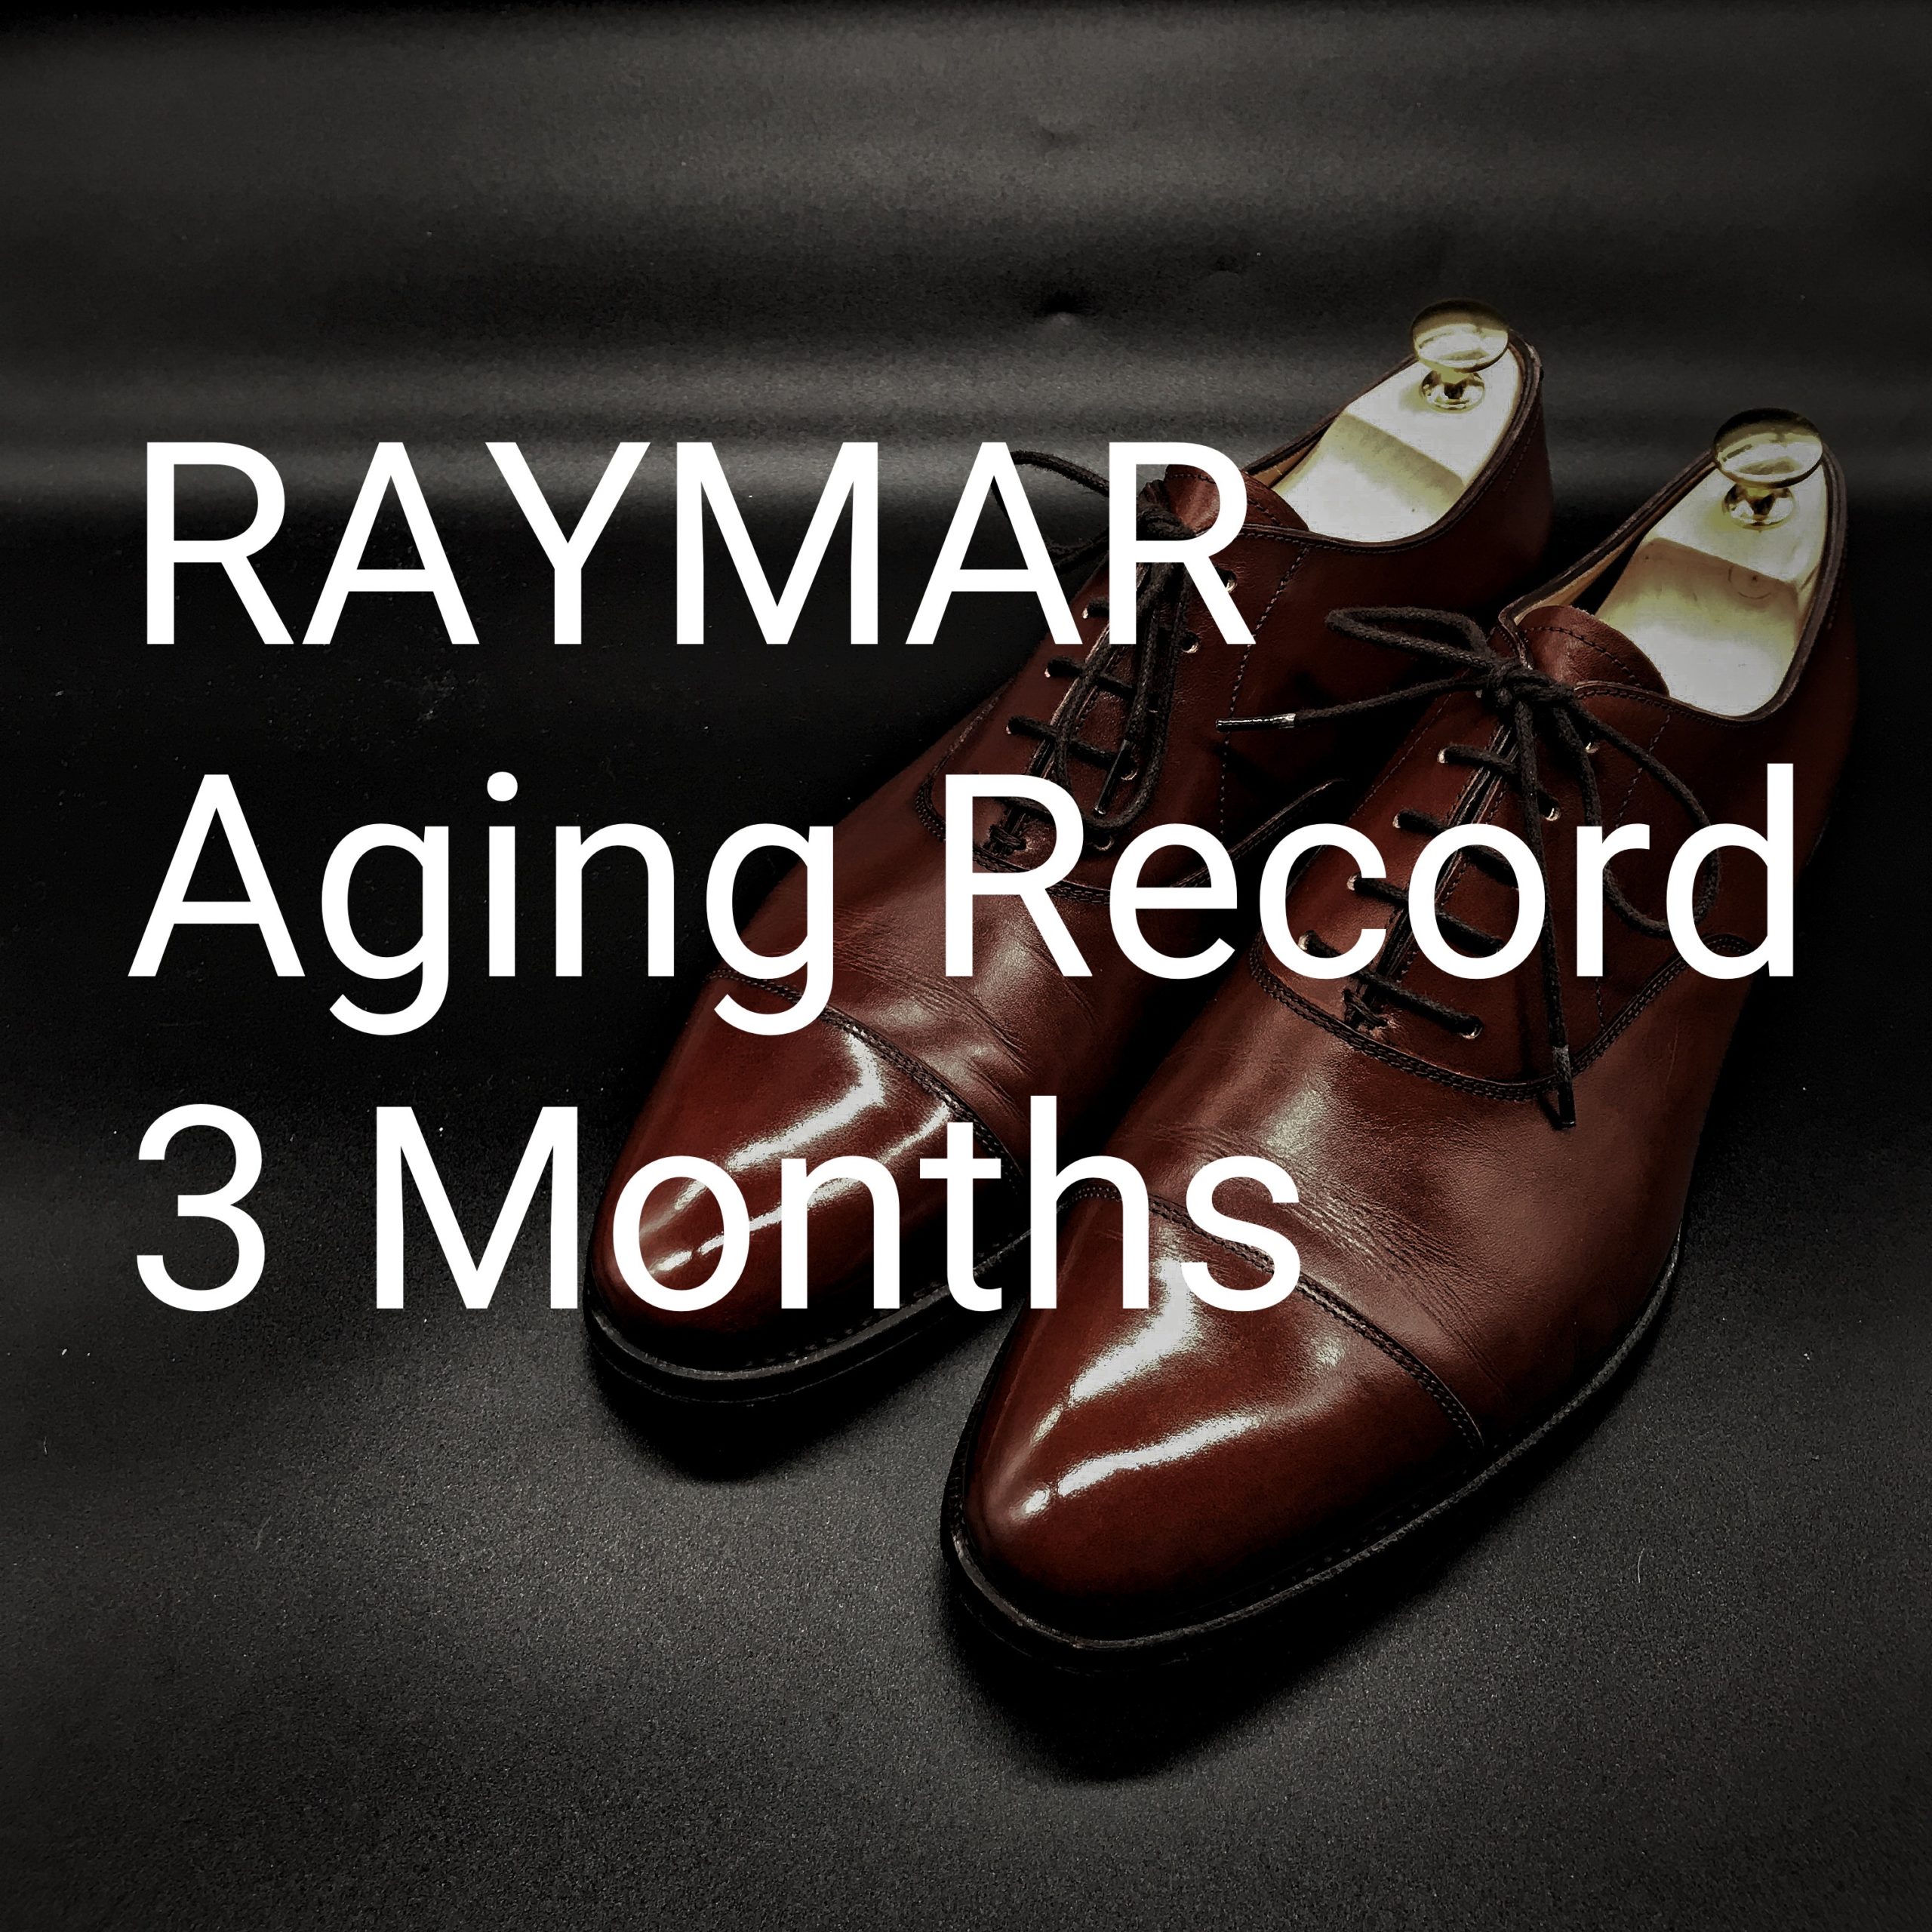 経年変化の記録 Raymar レイマー ストレートチップ 3ヶ月 Lab